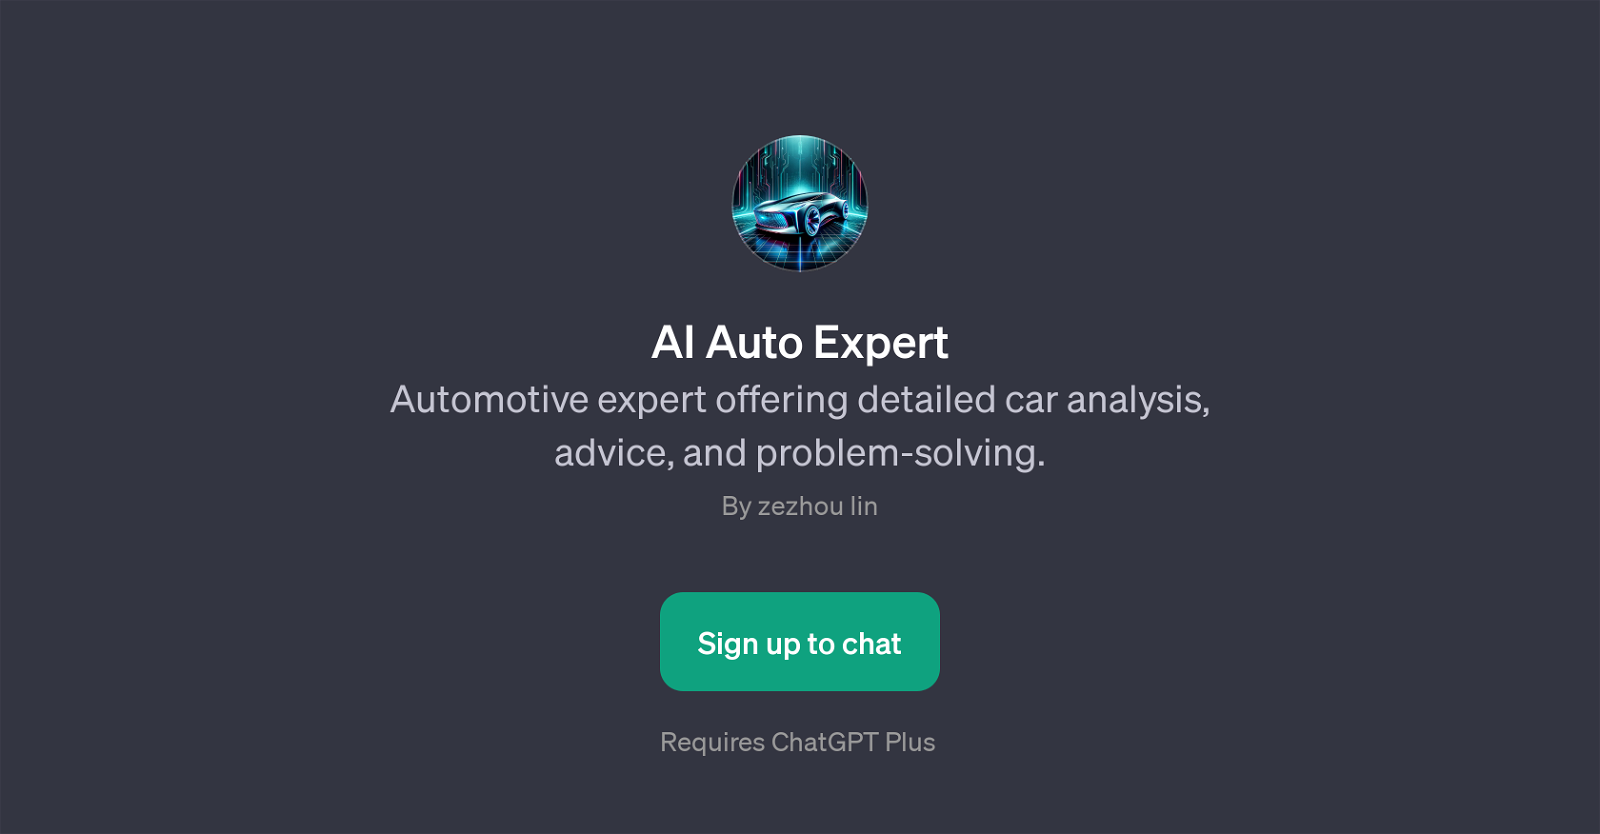 AI Auto Expert website